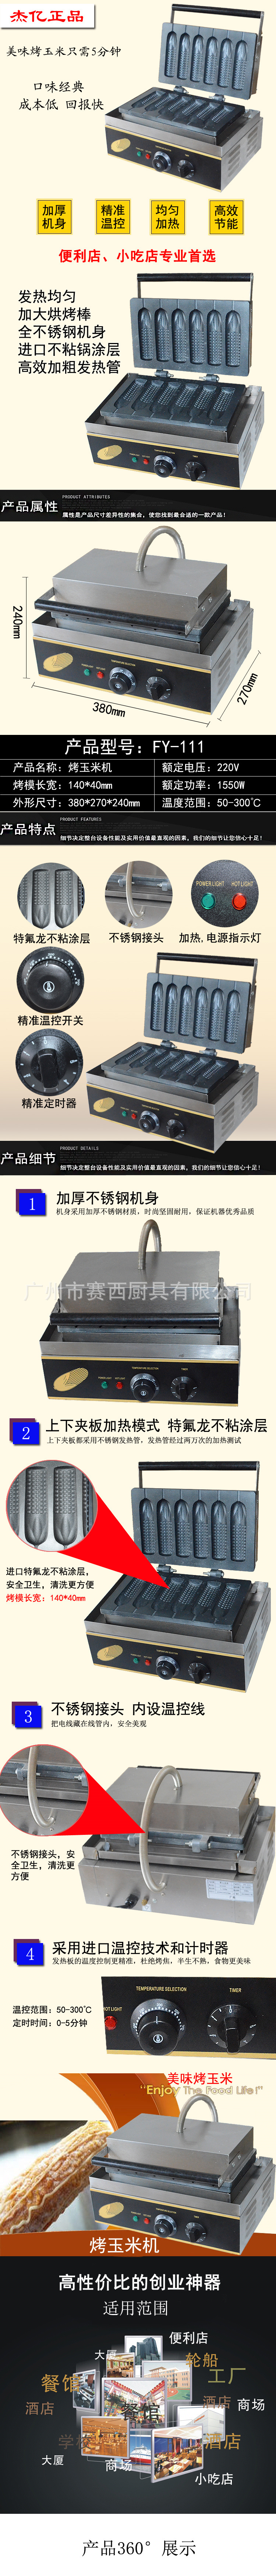 杰亿烤玉米机电热商用电热烤饼机 脆饼香酥机电热烤饼机FY-111